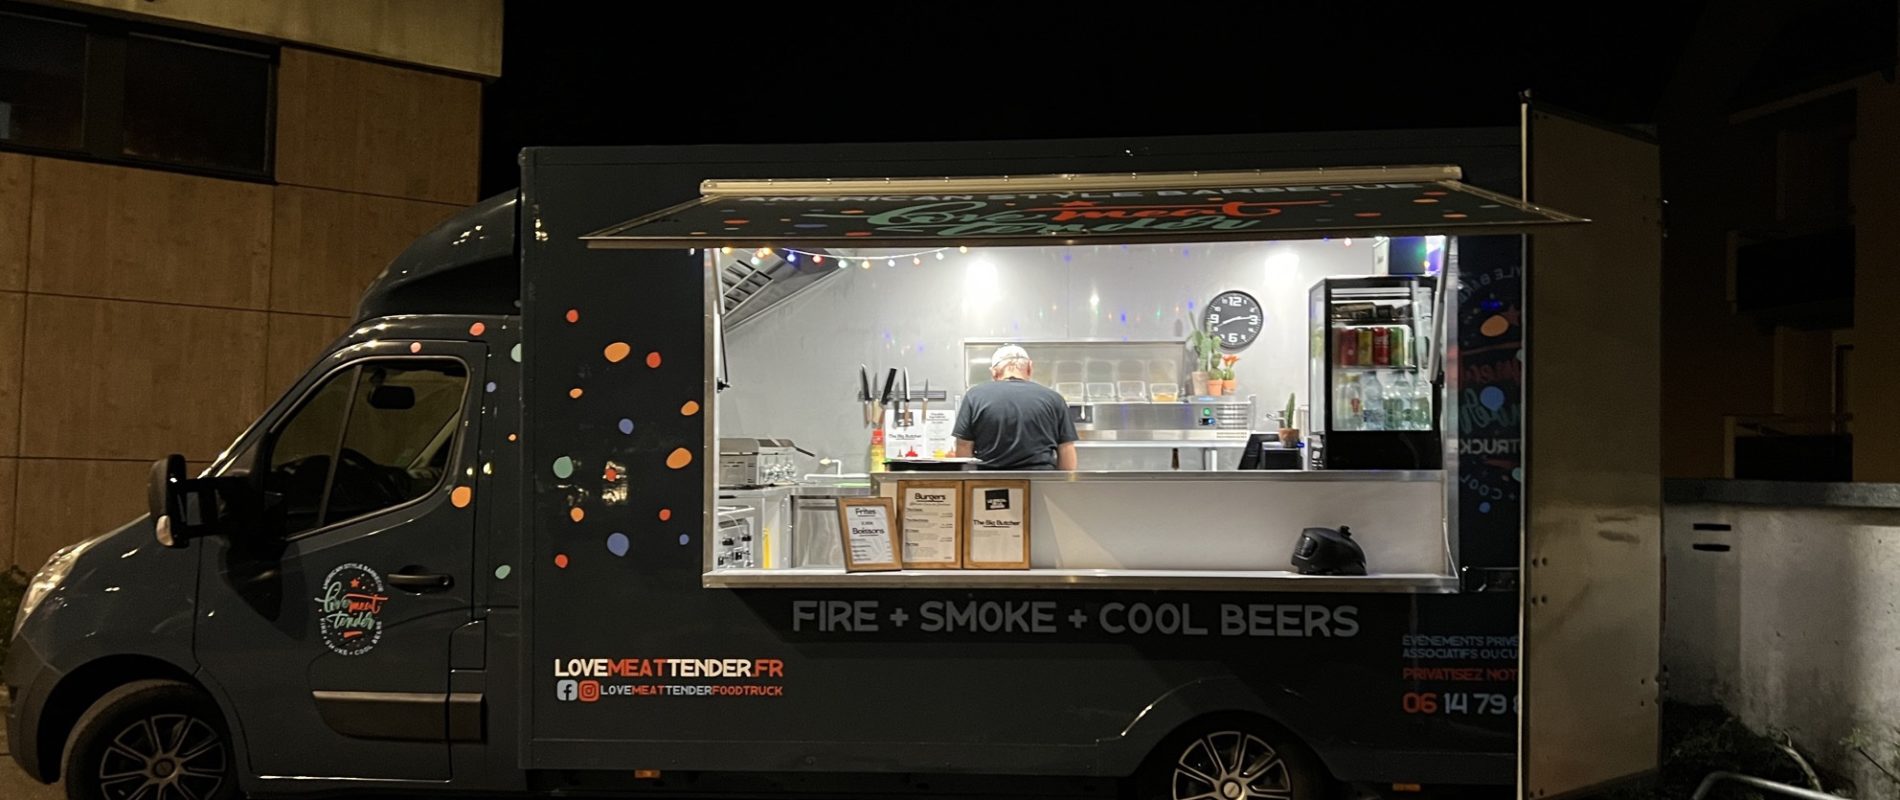 [On a testé] Love Meat Tender, le food truck qui sublime les burgers